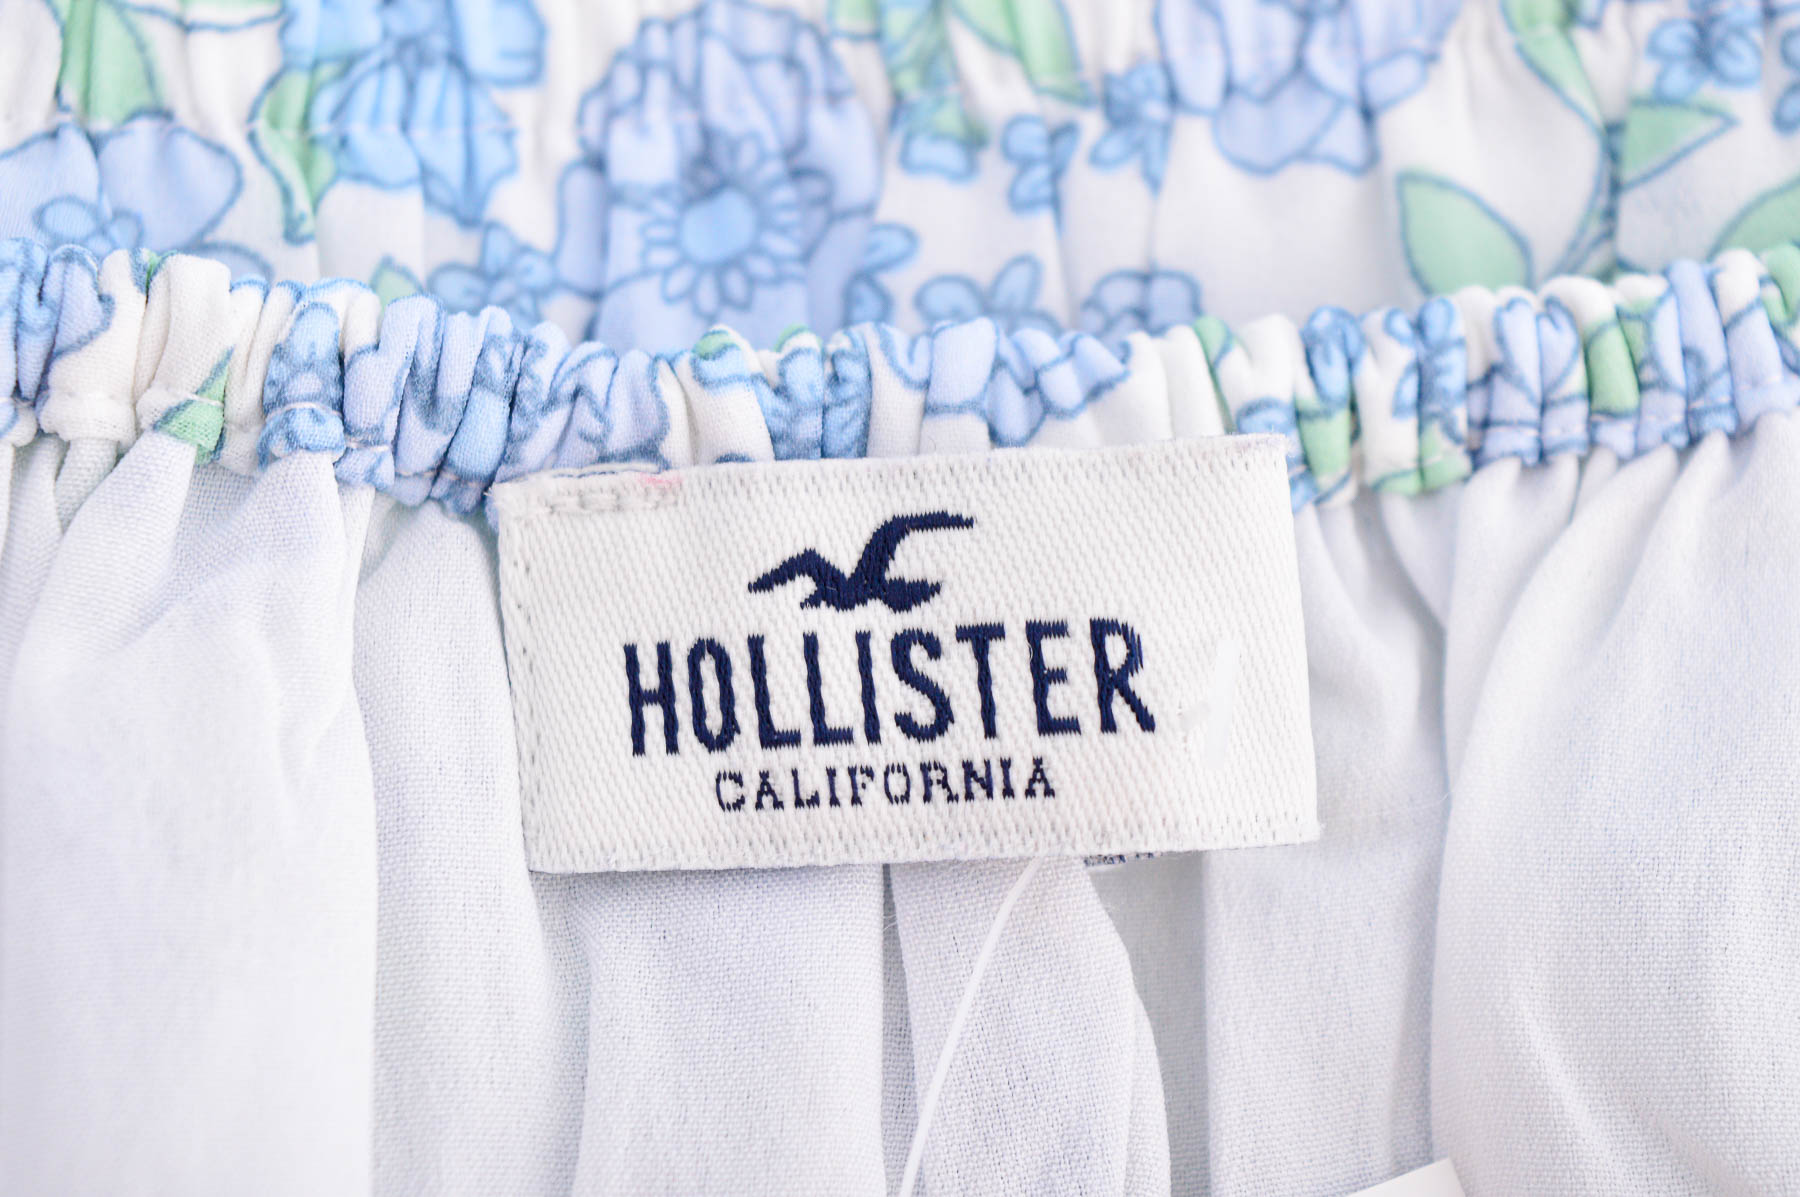 Women's shirt - Hollister - 2